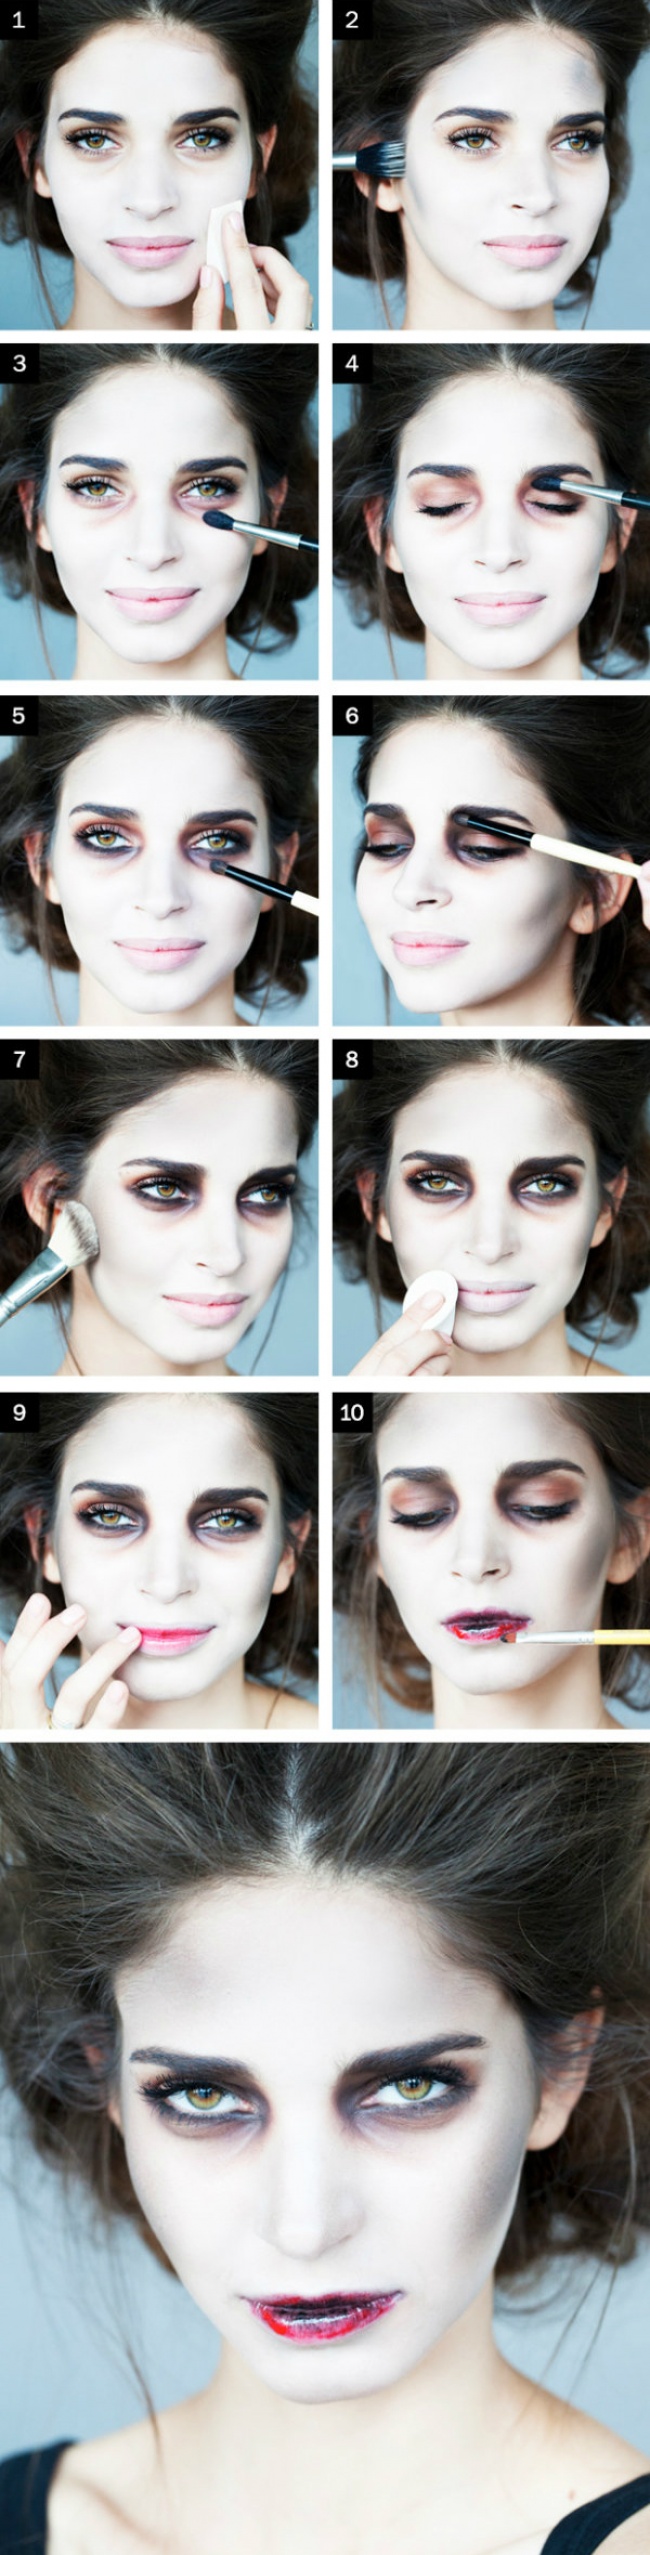 5 умопомрачительных идей для макияжа на Хеллоуин